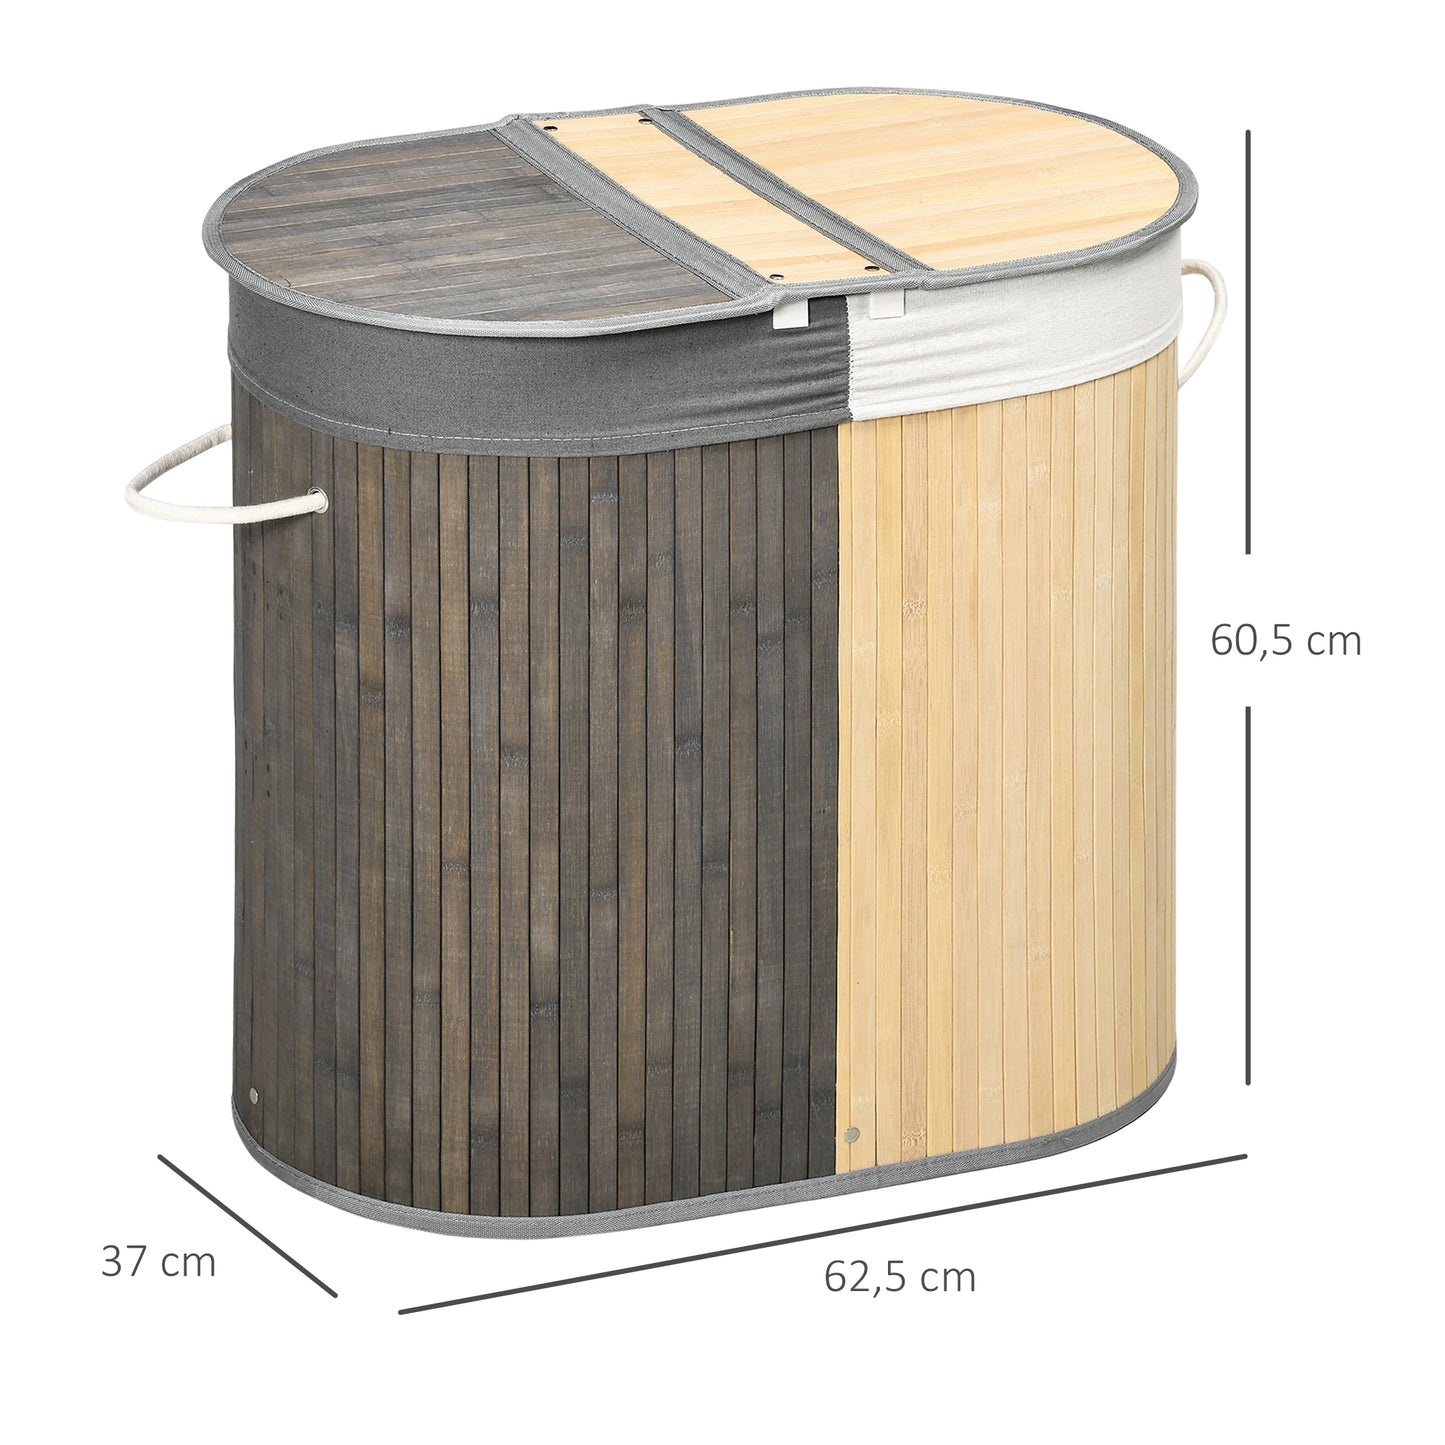 HOMCOM Cesto para Ropa Sucia de Bambú Capacidad de 100L Cesta para la Colada con Tapa Abatible y Bolsa de 2 Compartimentos Extraíble 62,5x37x60,5 cm Gris y Natural